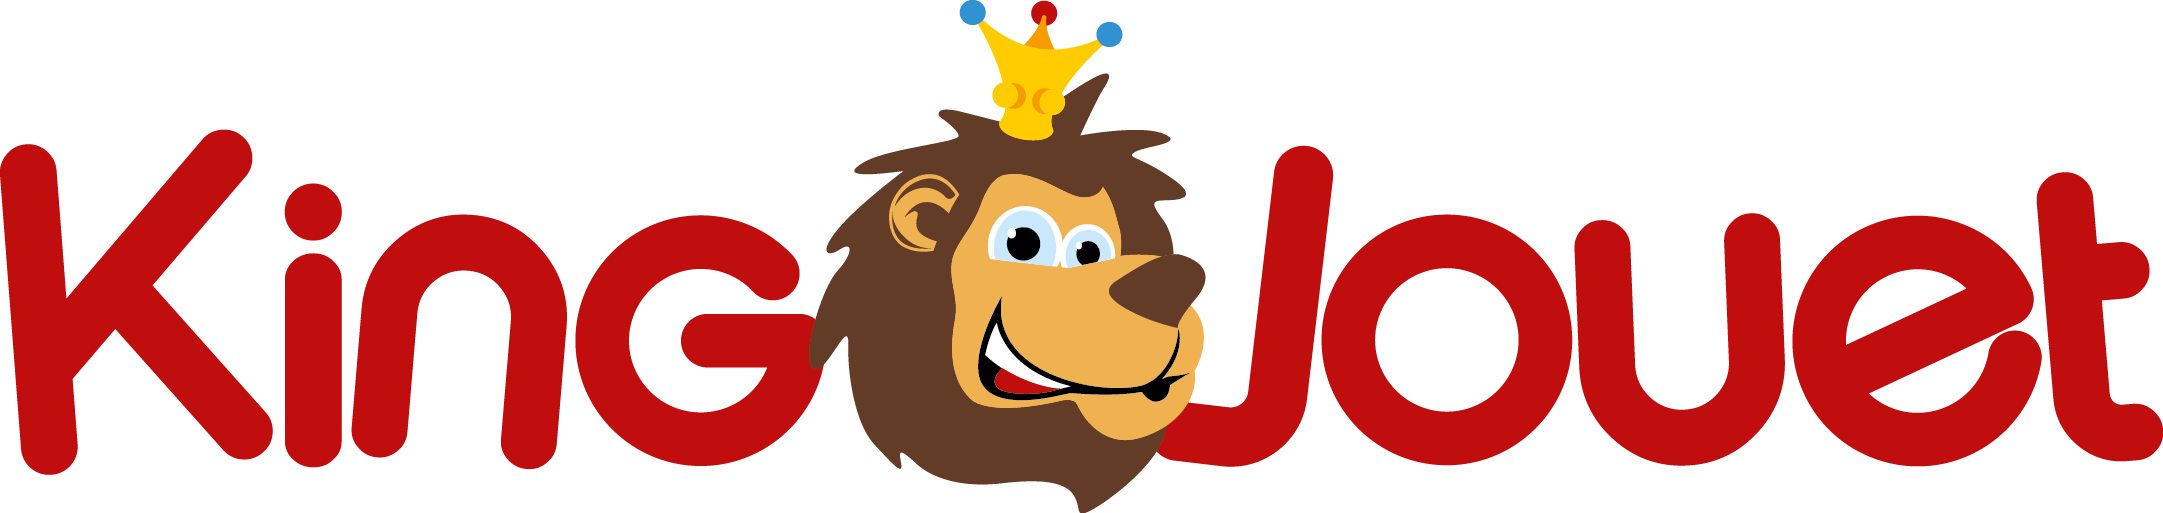 logo King Jouet